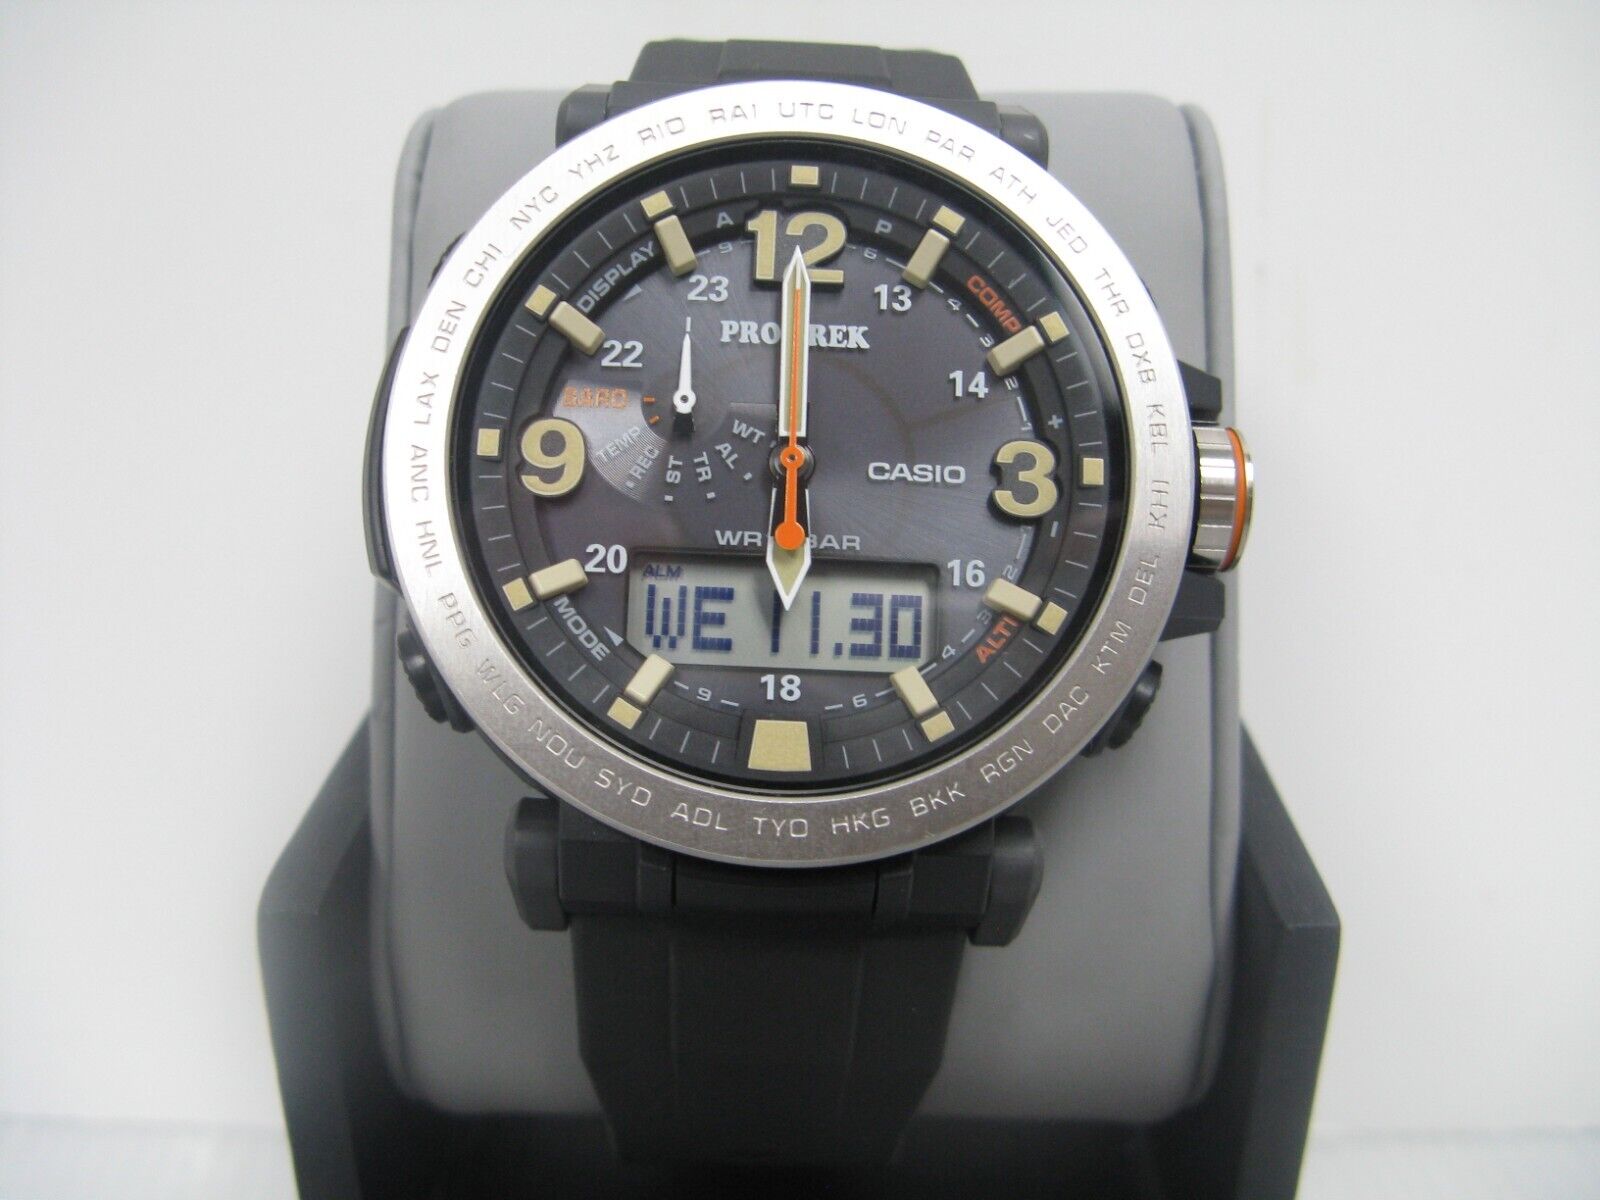 カシオ プロトレック プラスroot coカラビナ 5497 prg-600yb - 腕時計 